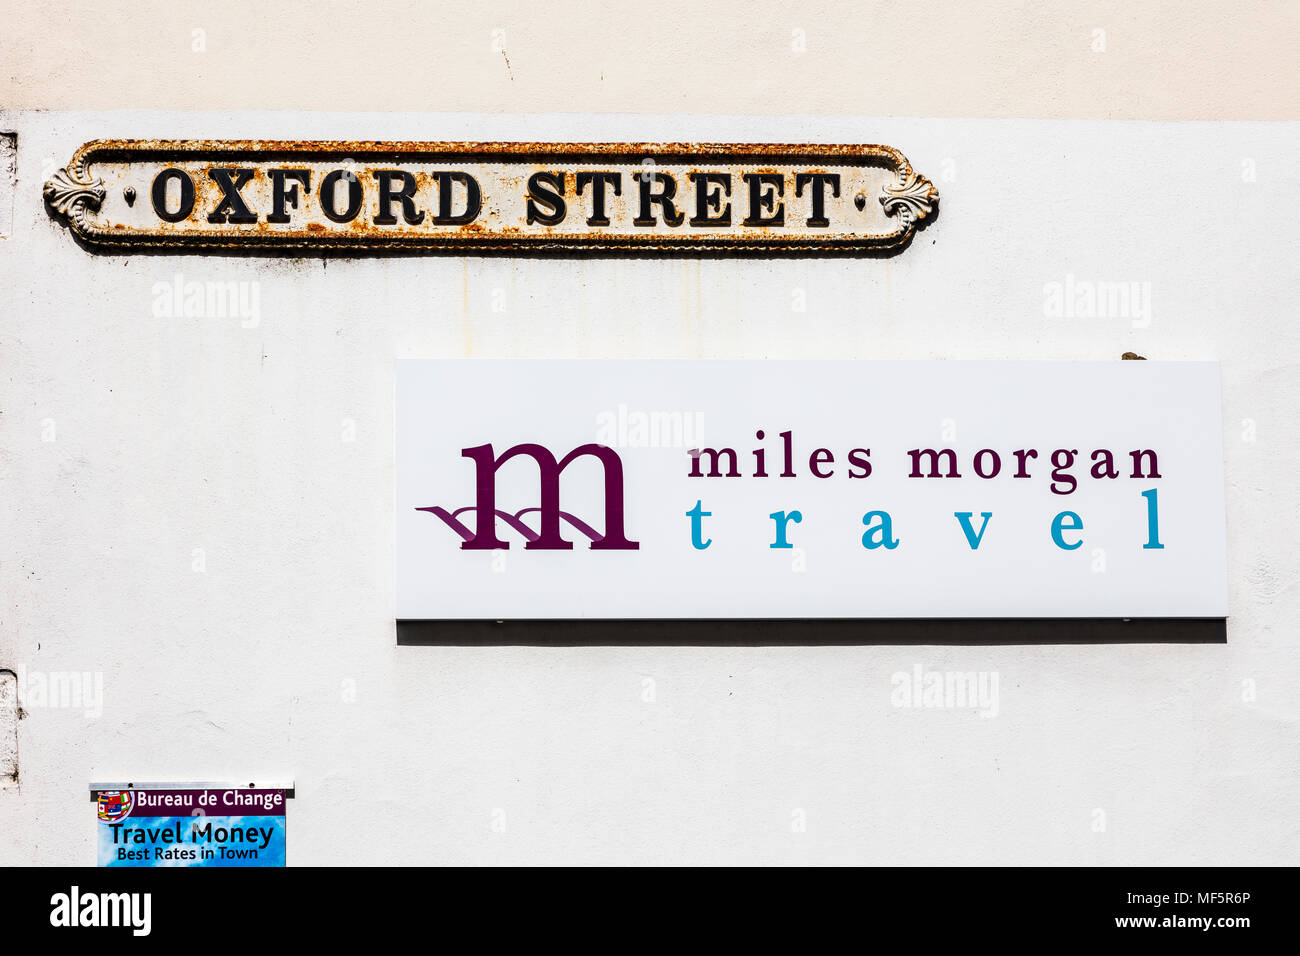 Oxford Street road sign sur le mur d'une boutique à Malmesbury, Wiltshire, Royaume-Uni Banque D'Images